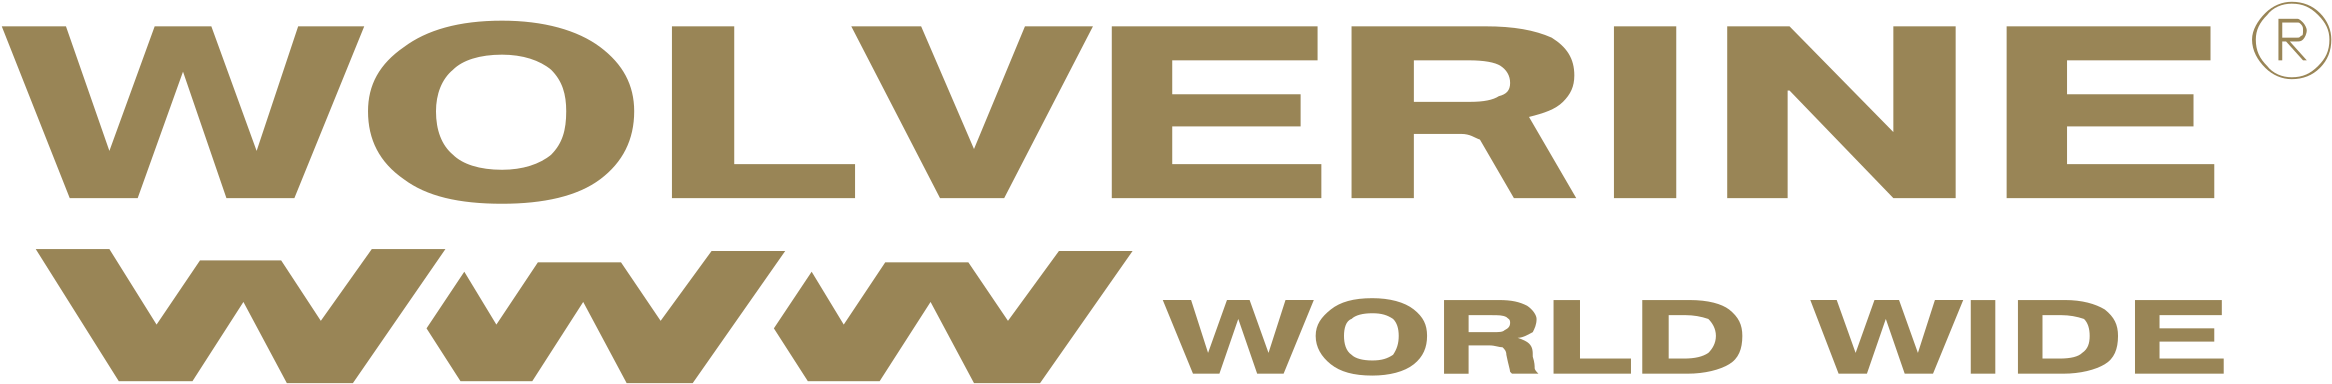 Wolverine World Wide Logo